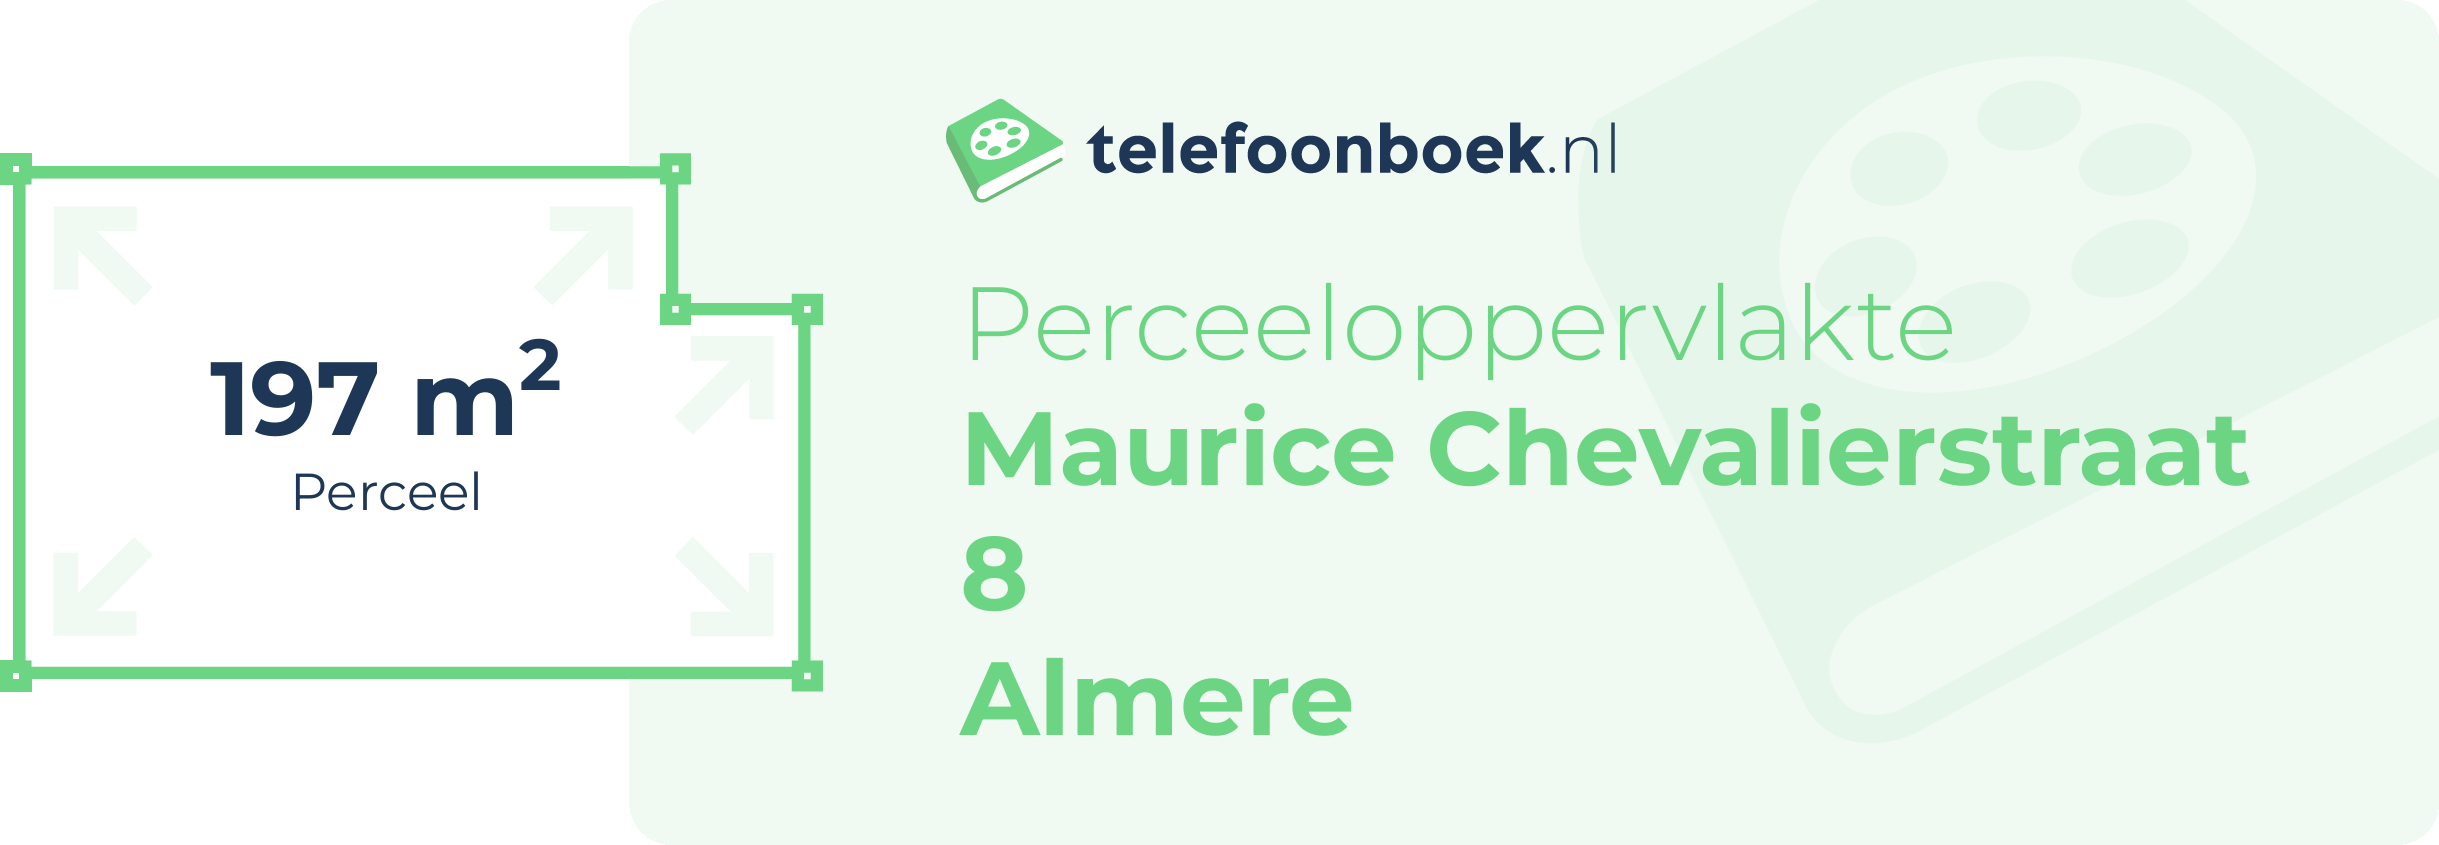 Perceeloppervlakte Maurice Chevalierstraat 8 Almere